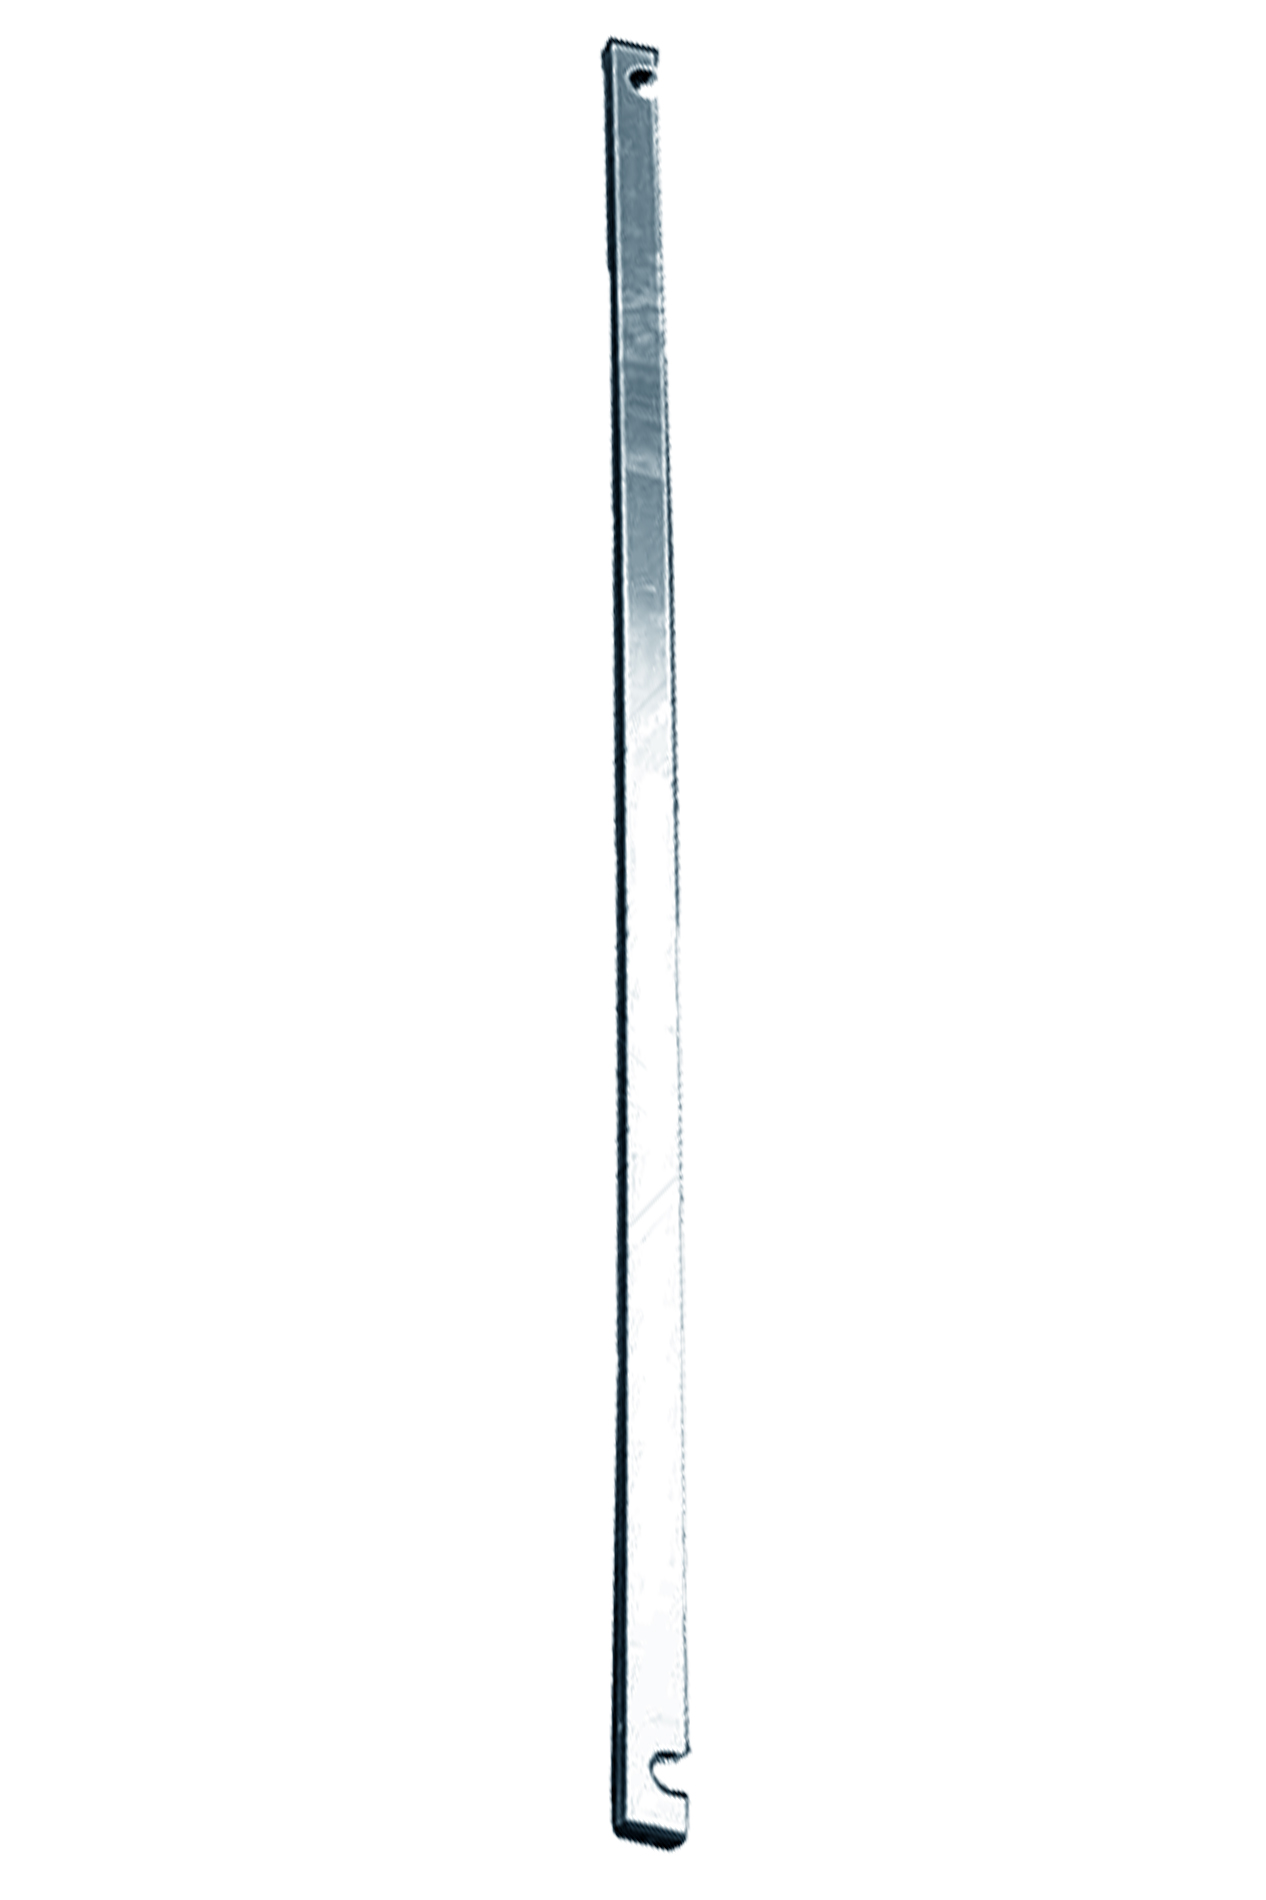 Дополнительное изображение STABILO 100-2 Передвижные подмости, рабочая высота 11,3 м, размер площадки (2.0x0.75 м)